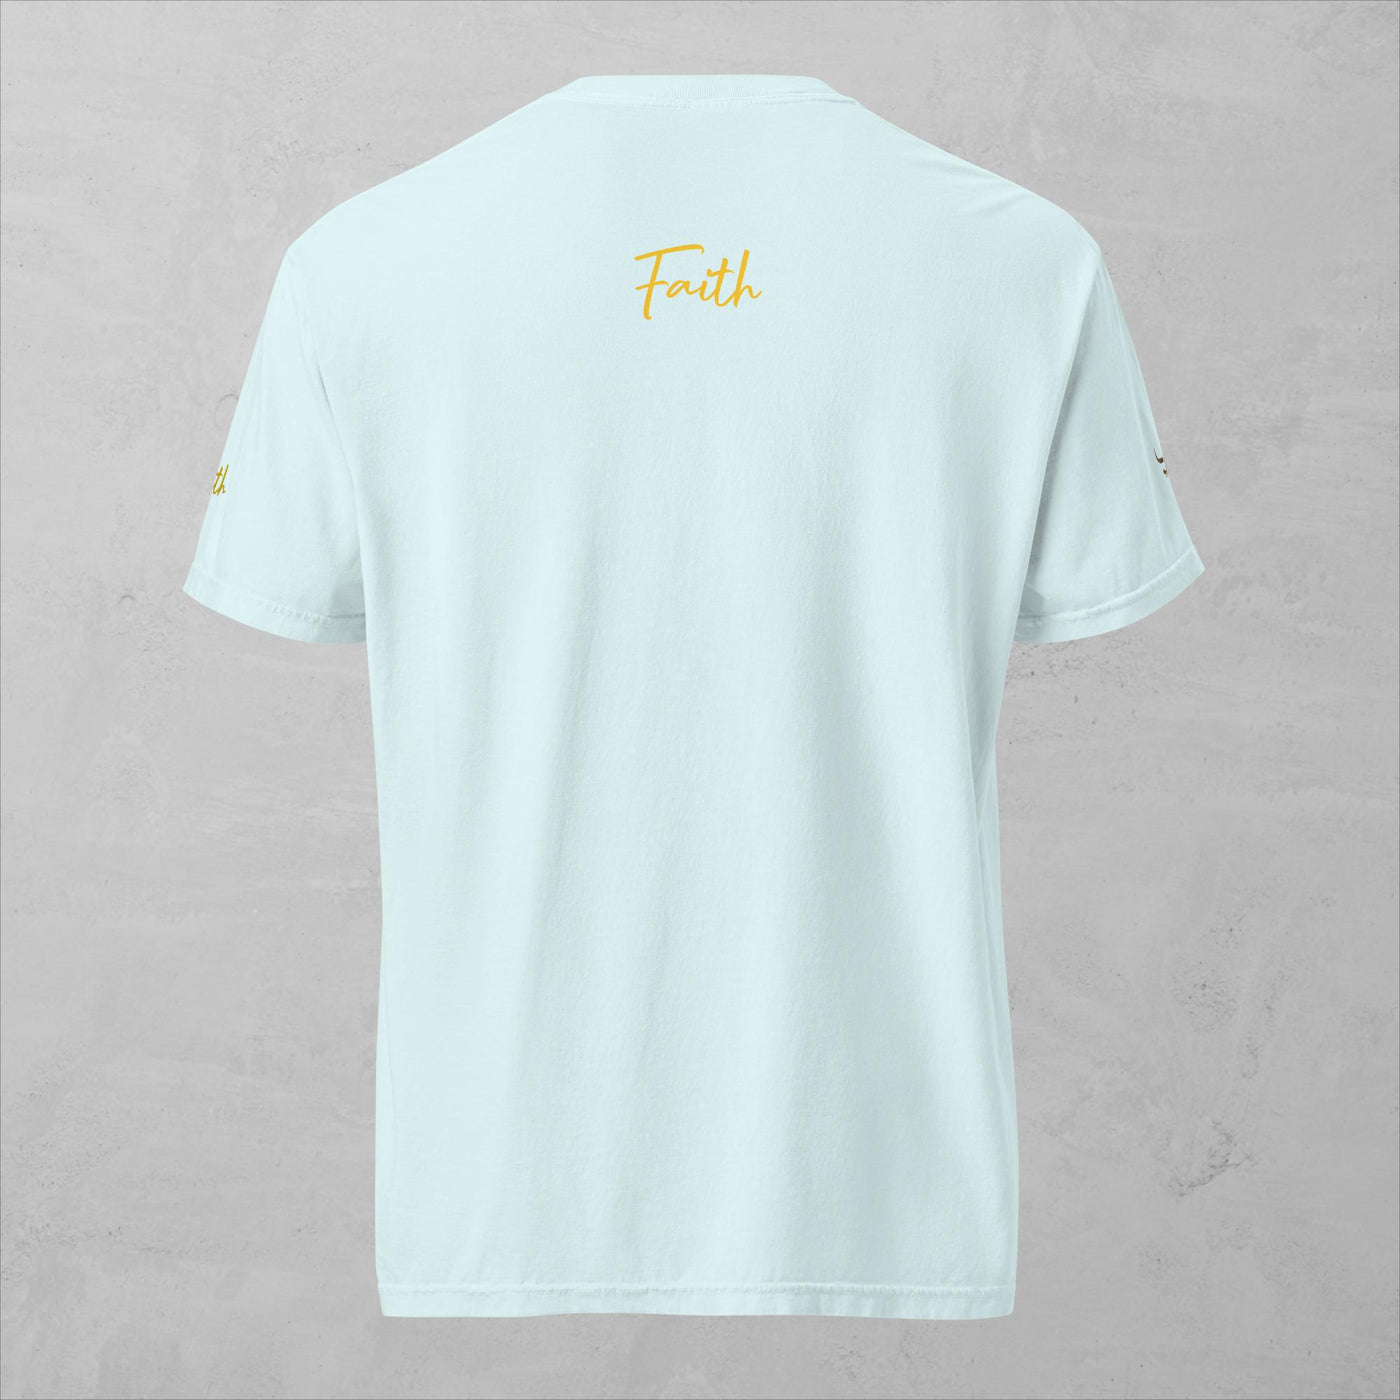 J.A Yellow Faith- Men's heavyweight t-shirt